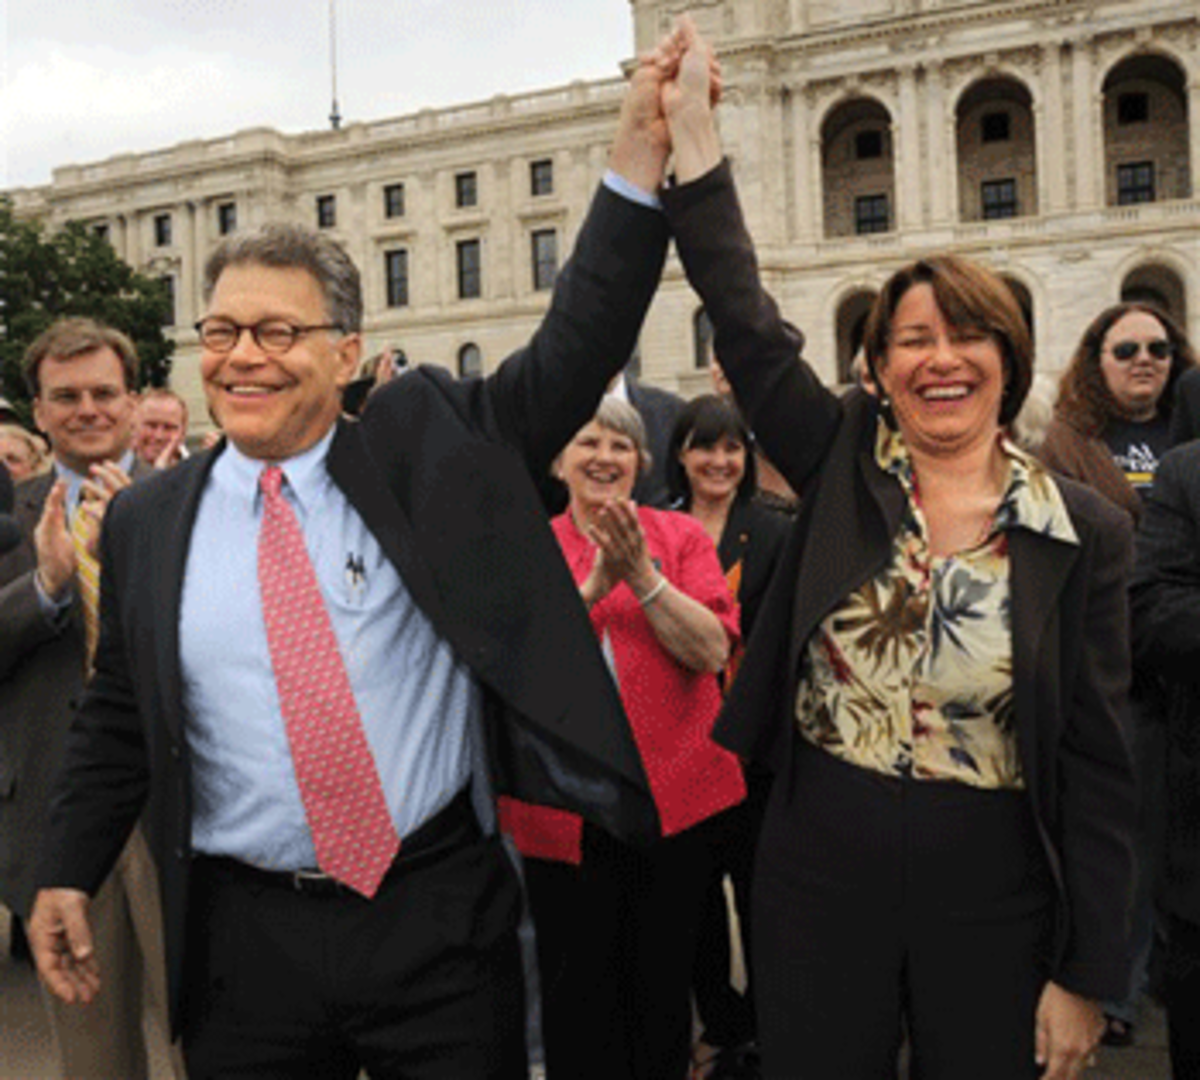 Minnesota U.S. Senators Al Franken and Amy Klobuchar. (AP Photo /Craig Lassig)